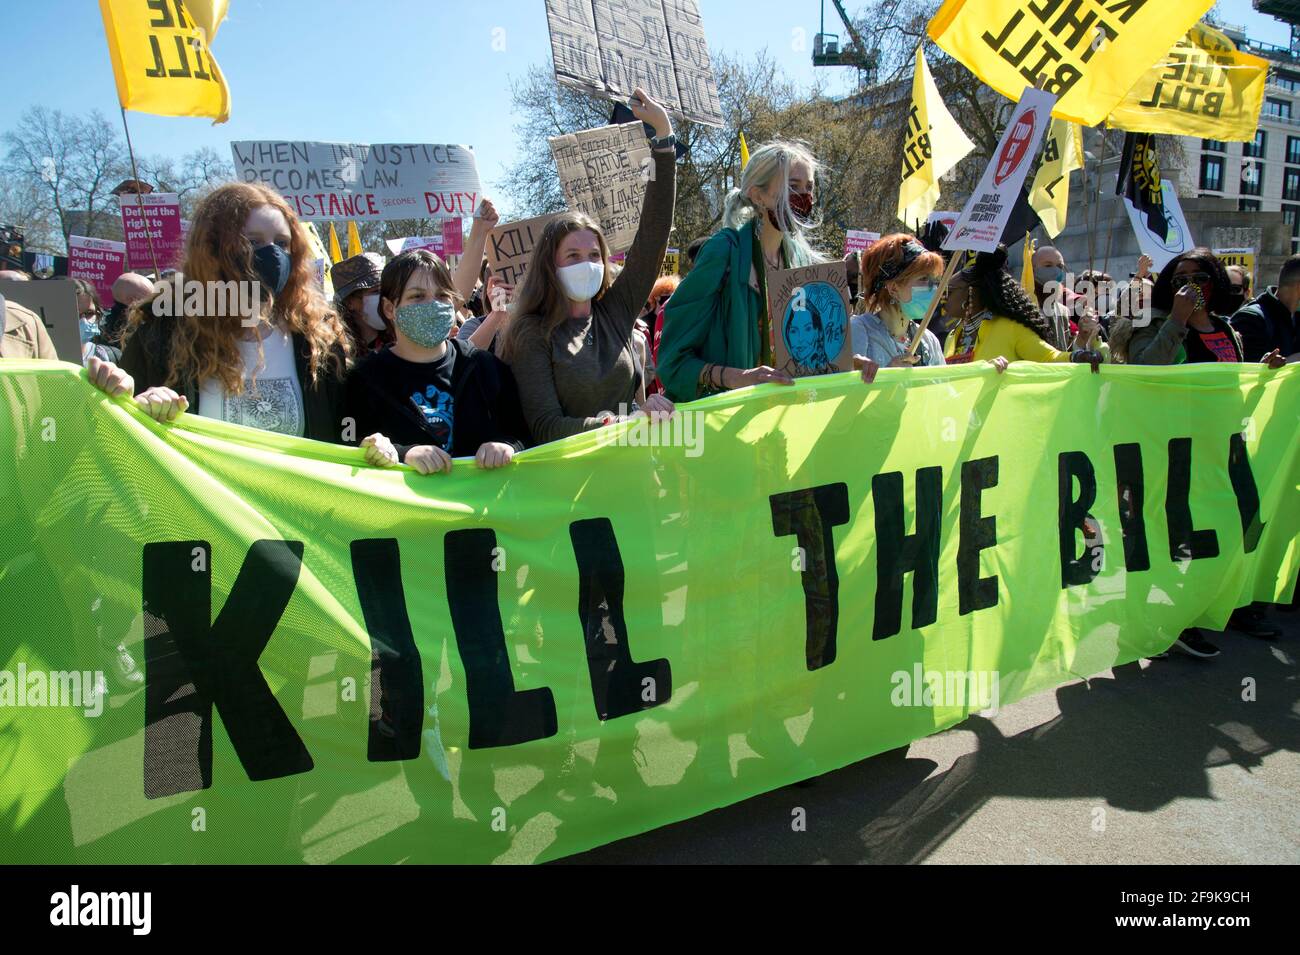 17.04.2021. Matar la protesta de la ley. Arco Wellington. Una multitud de manifestantes con máscaras encabezan la marcha detrás de una bandera que dice 'Kill the Bill'. Foto de stock